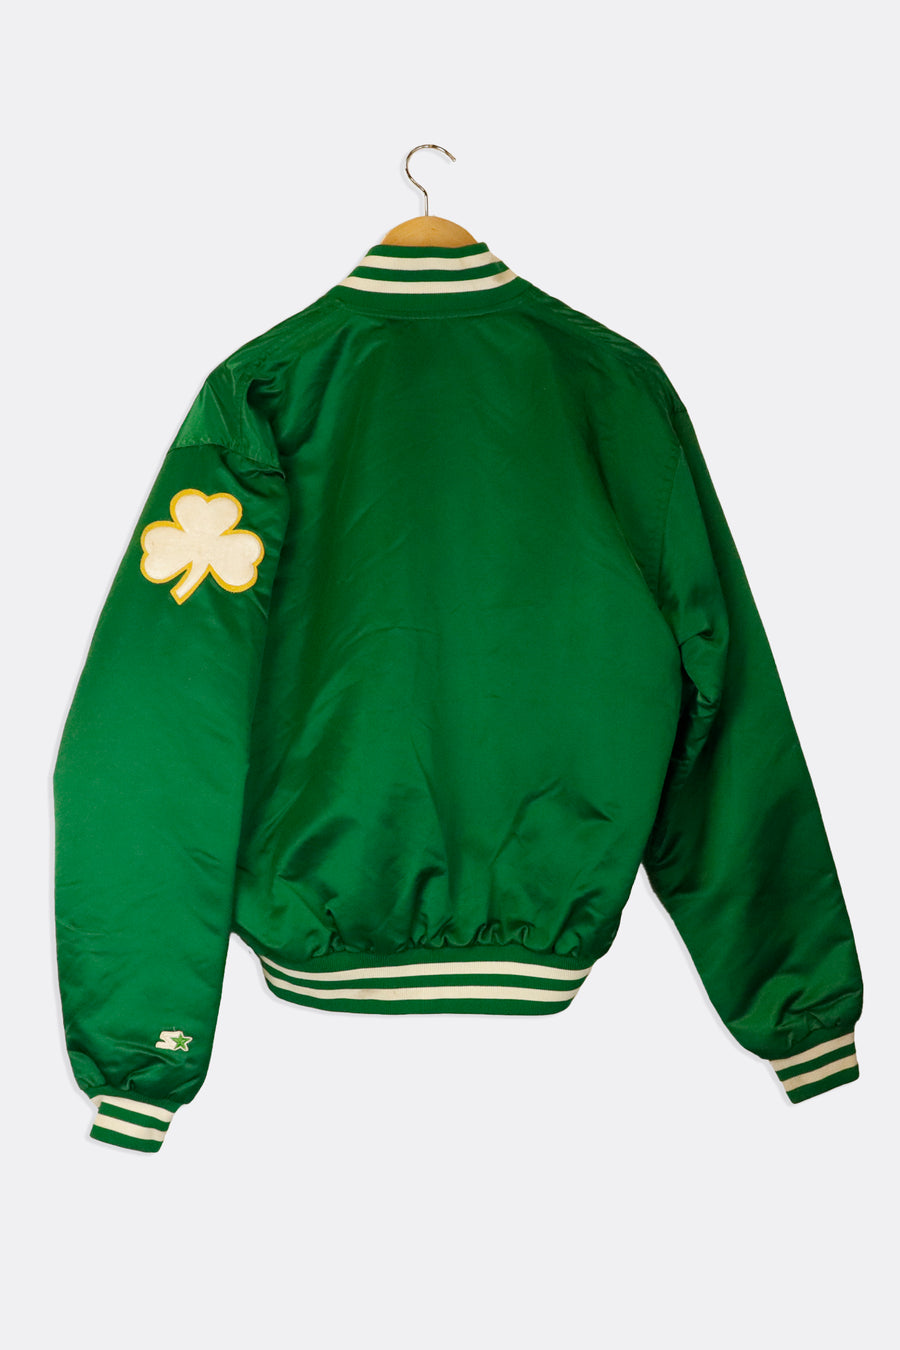 Vintage NBA Boston Celtics Starter Jacket Sz L